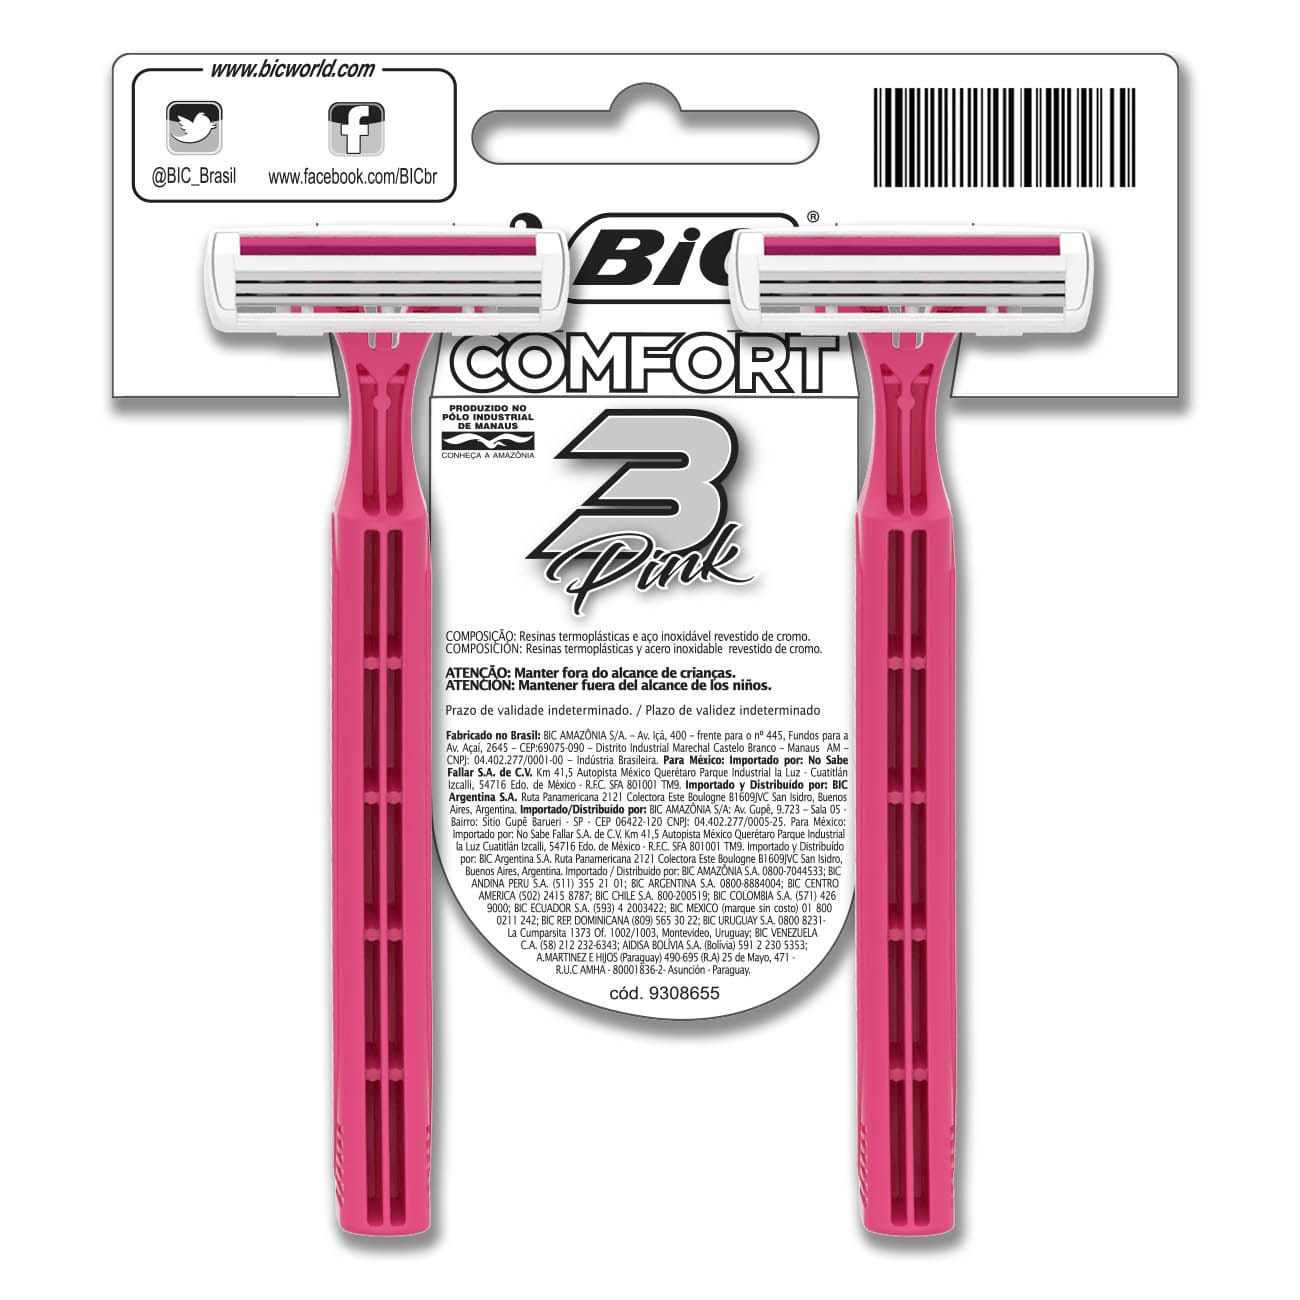 Aparelho de Depilar BIC Comfort 3 Pink com 2 unidades (x12 embalagens)